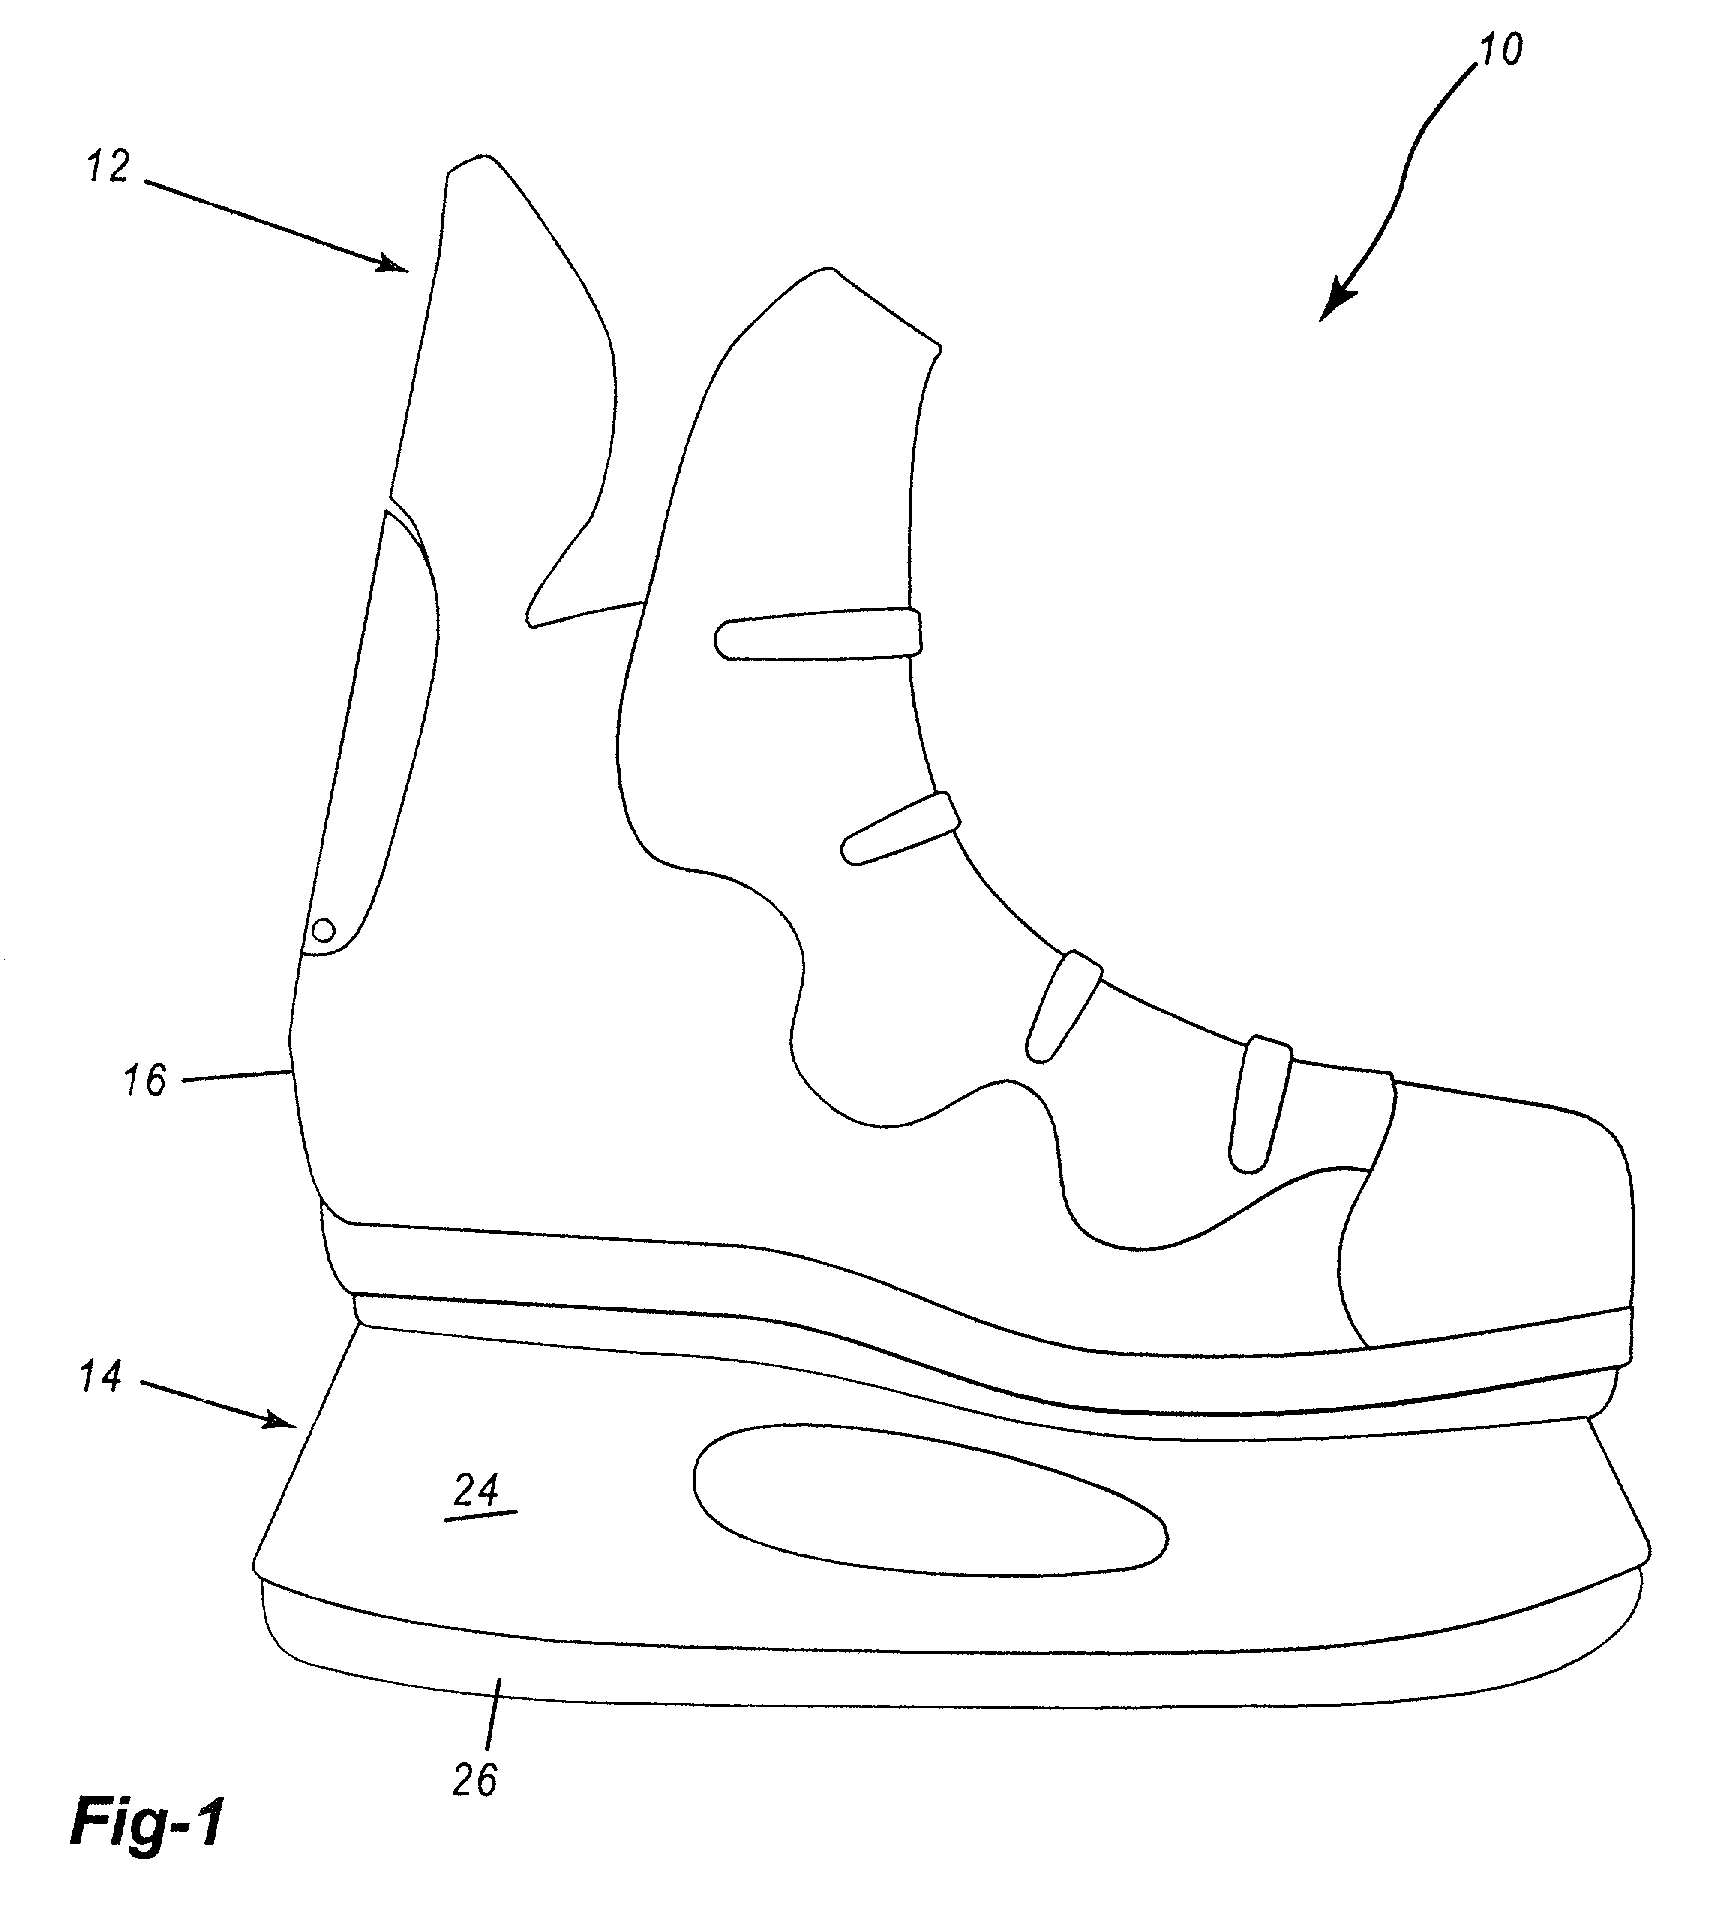 Footwear having a foot retaining system